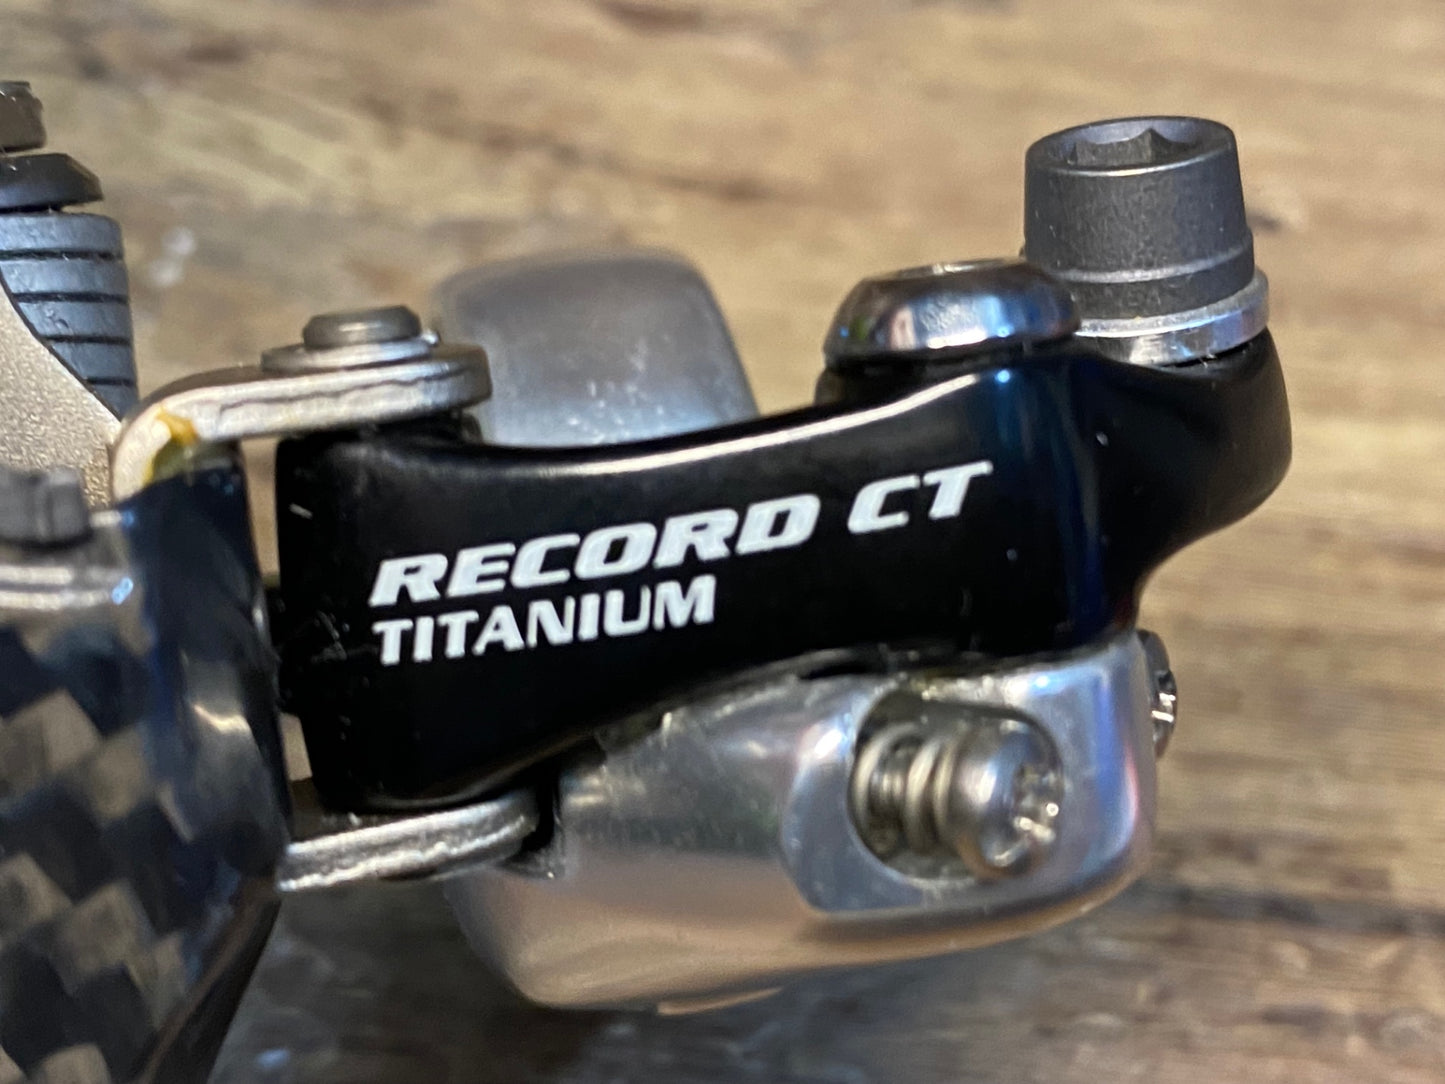 HU061 カンパニョーロ Campagnolo レコード RECORD CT TITANIUM フロントディレーラー 2x10S用 バンド Φ32mm 新品未使用品